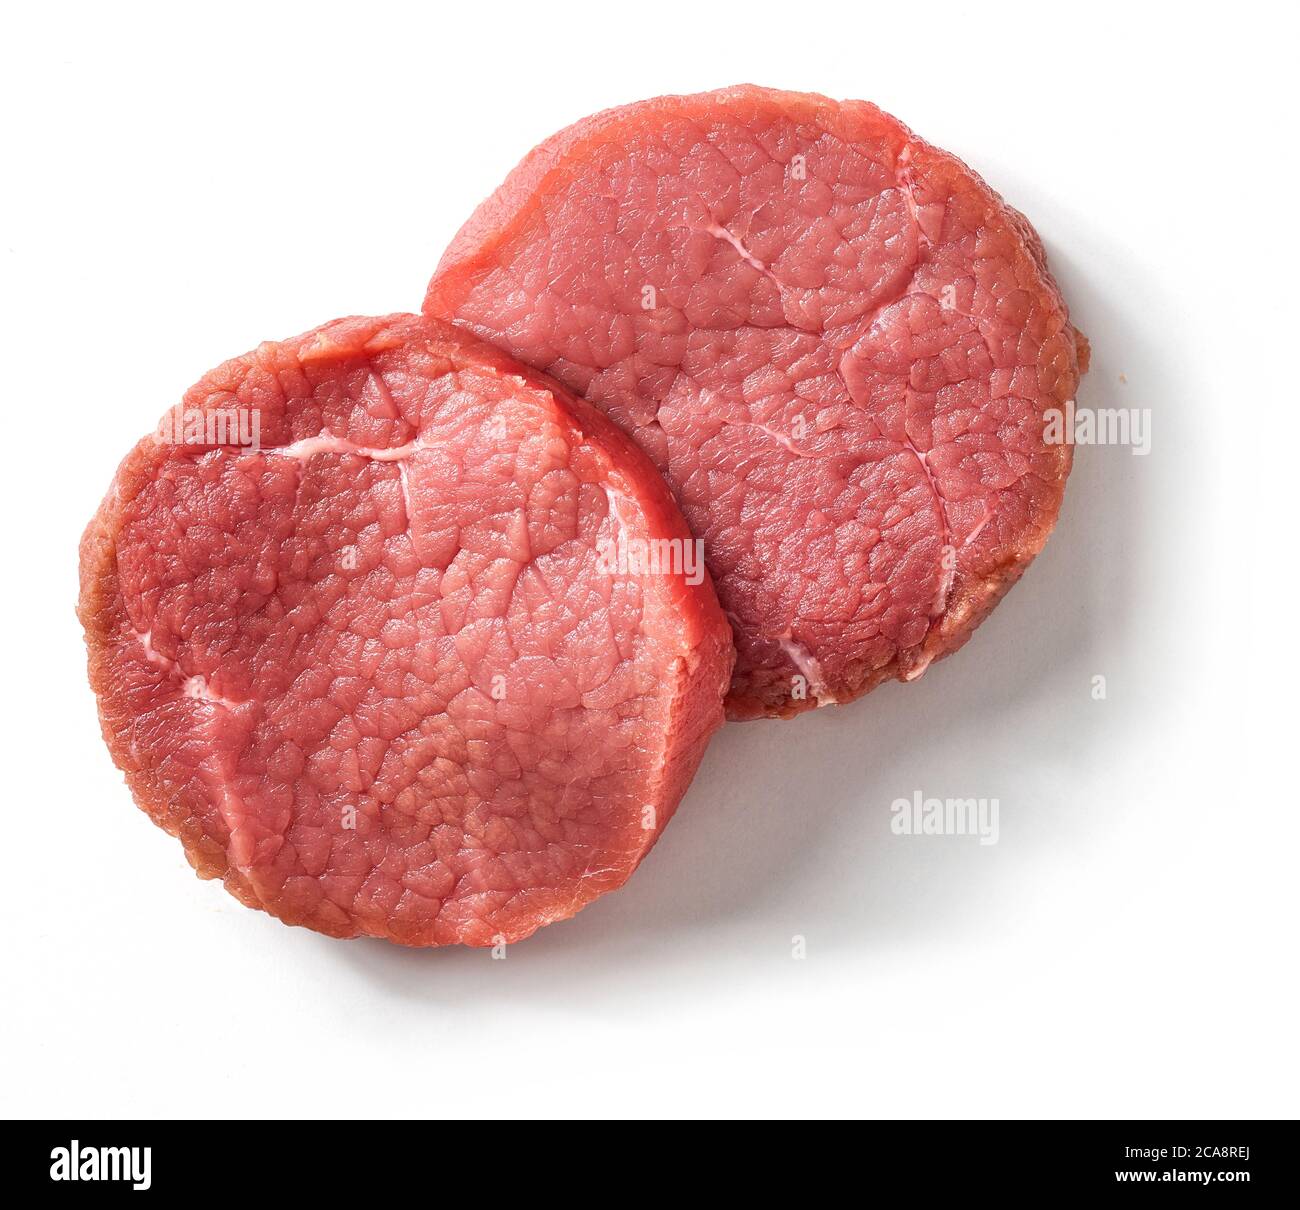 Fette fresche di carne di manzo, isolate su sfondo bianco, vista dall'alto Foto Stock